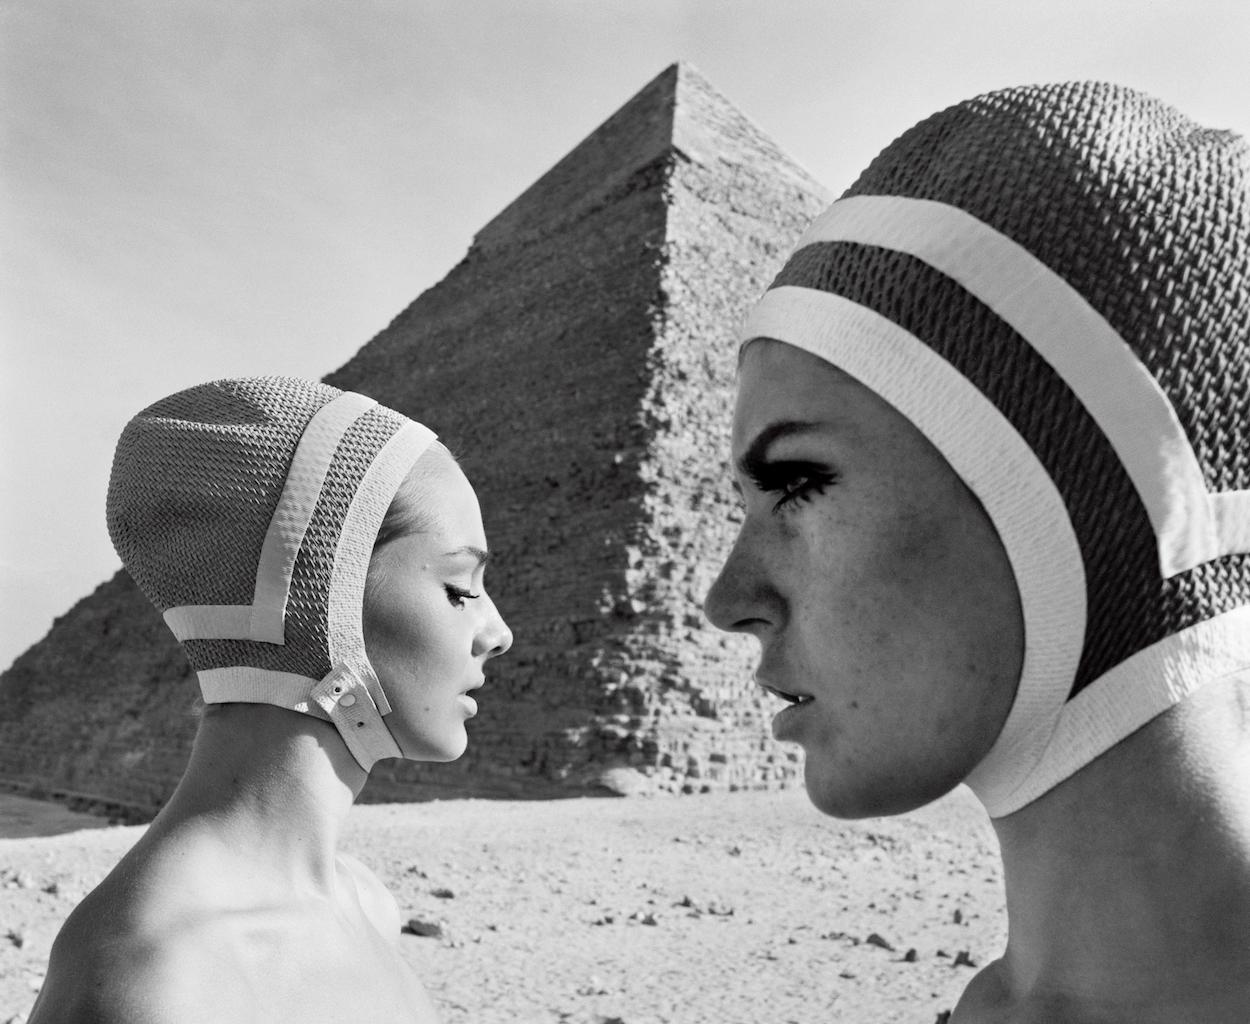 F.C. Gundlach Black and White Photograph - Vor der Cheops-Pyramide, Karin und Micky, Badekappen von Radium, Egypt